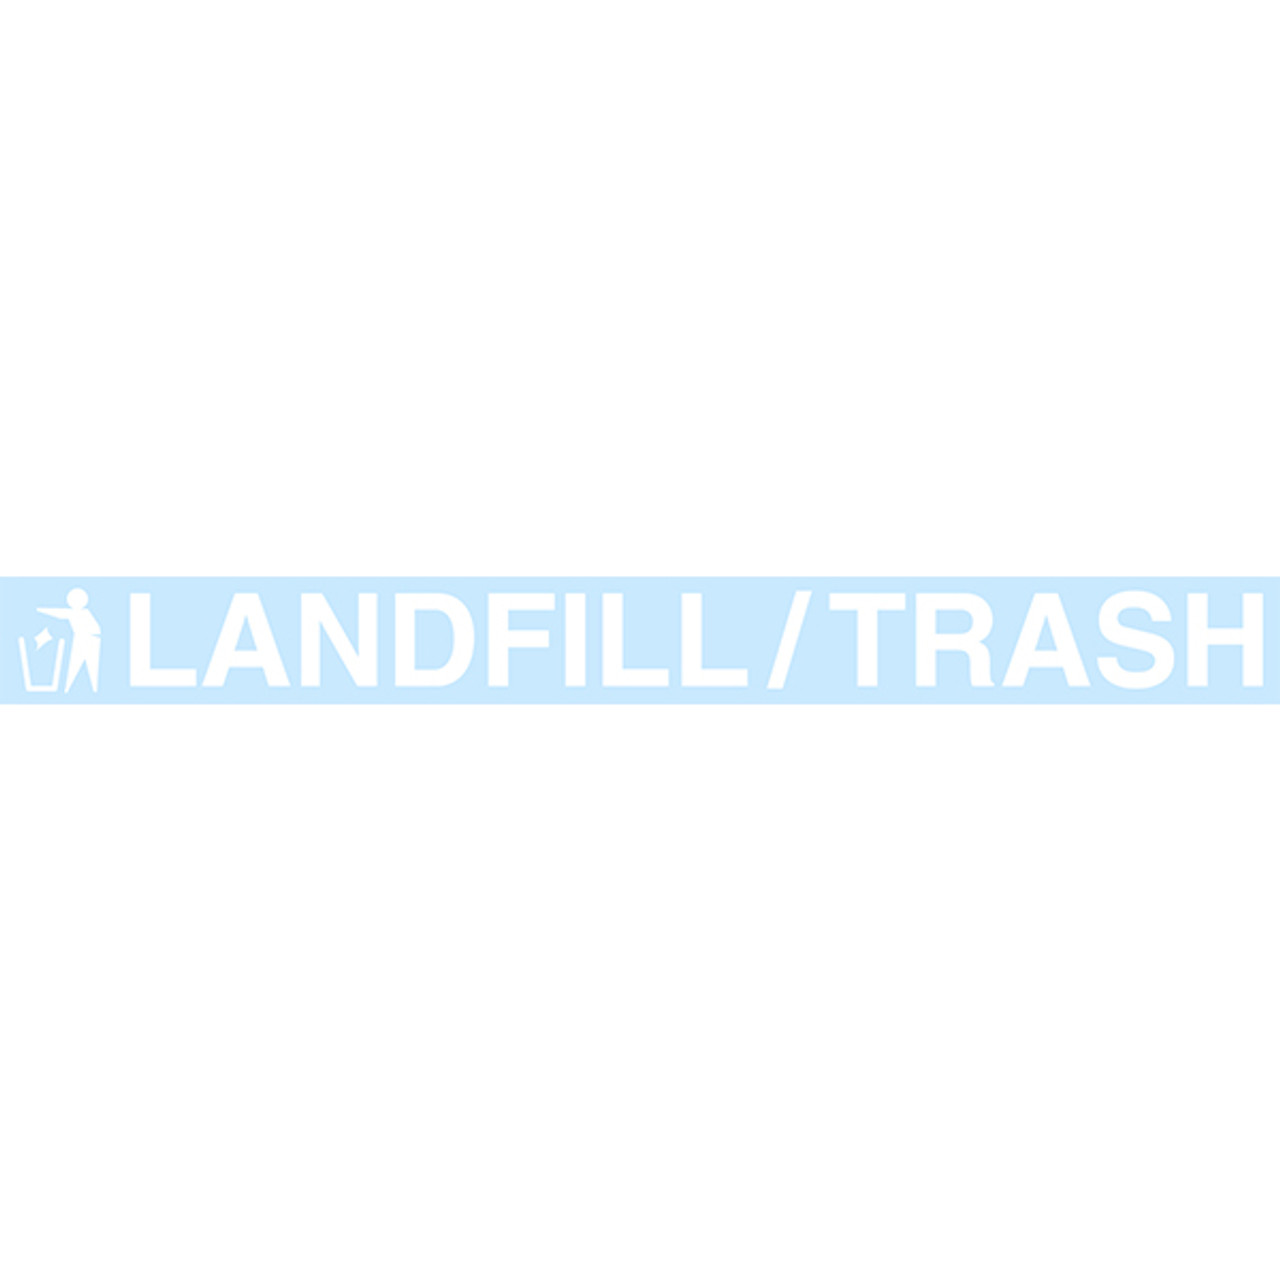 LANDFILL/TRASH